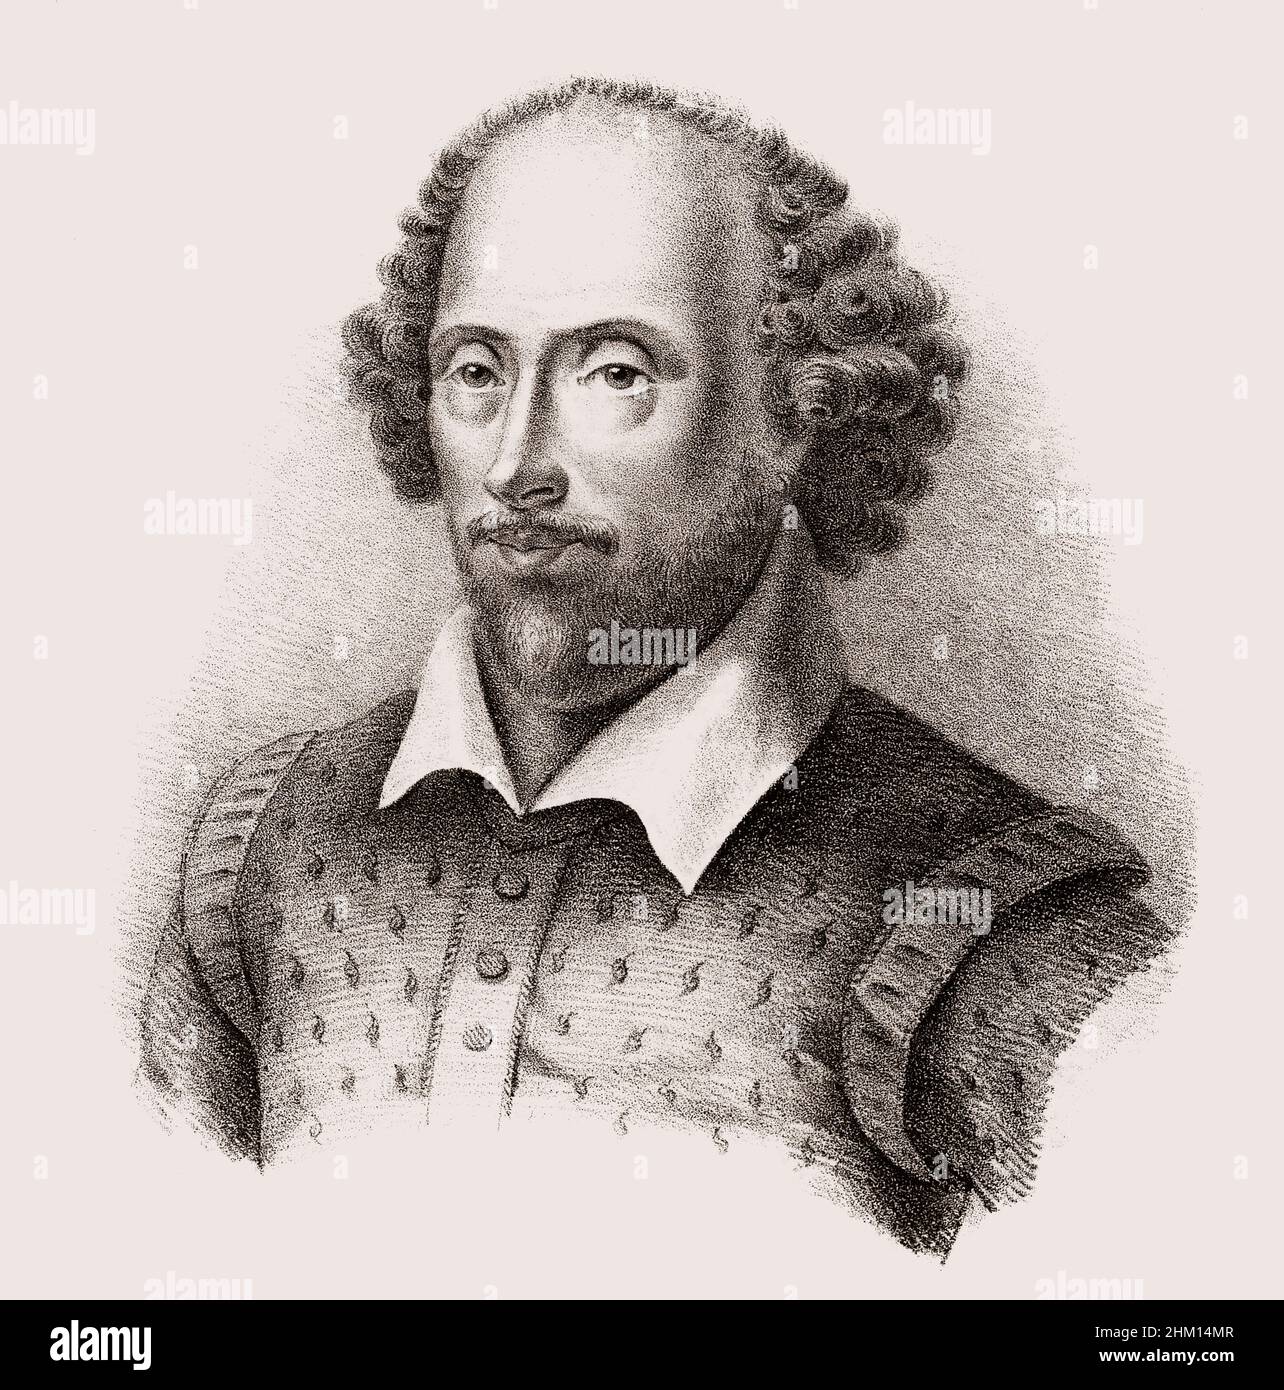 William Shakespeare, 1564 - 1616, Anglais, dramaturge, poète et acteur Banque D'Images